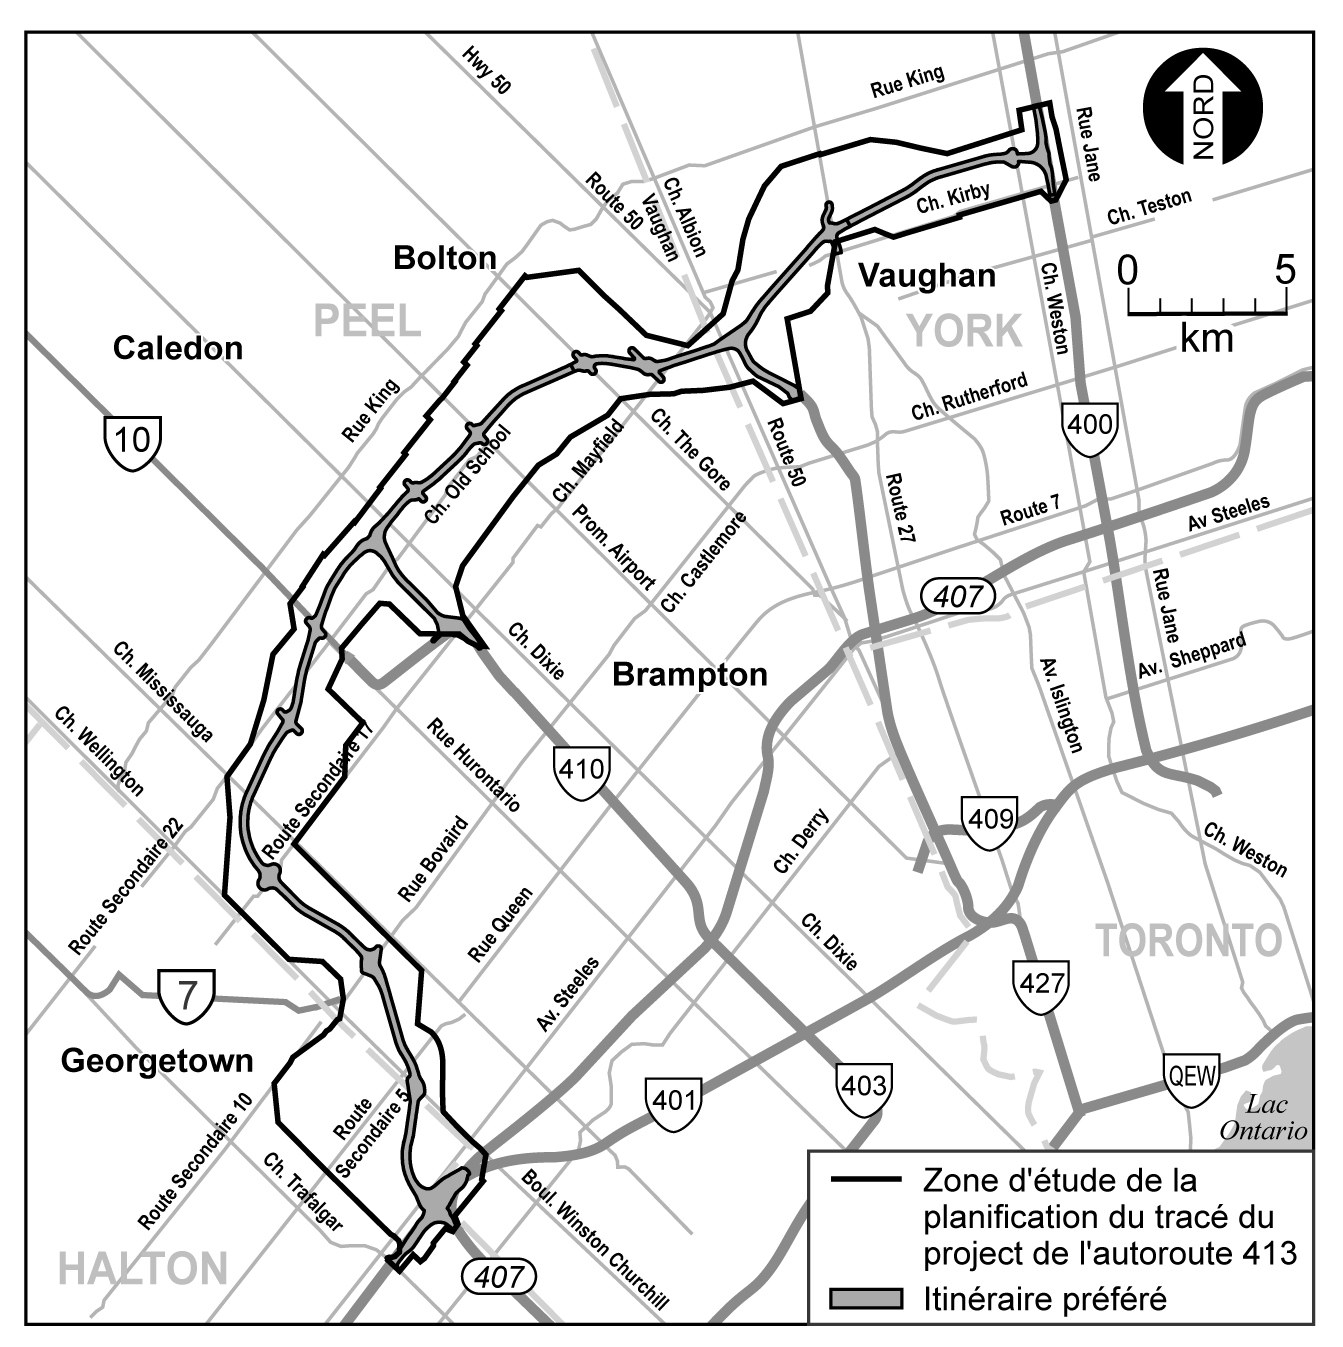 Zone d'étude de la planification du tracé du project de l'autoroute 413